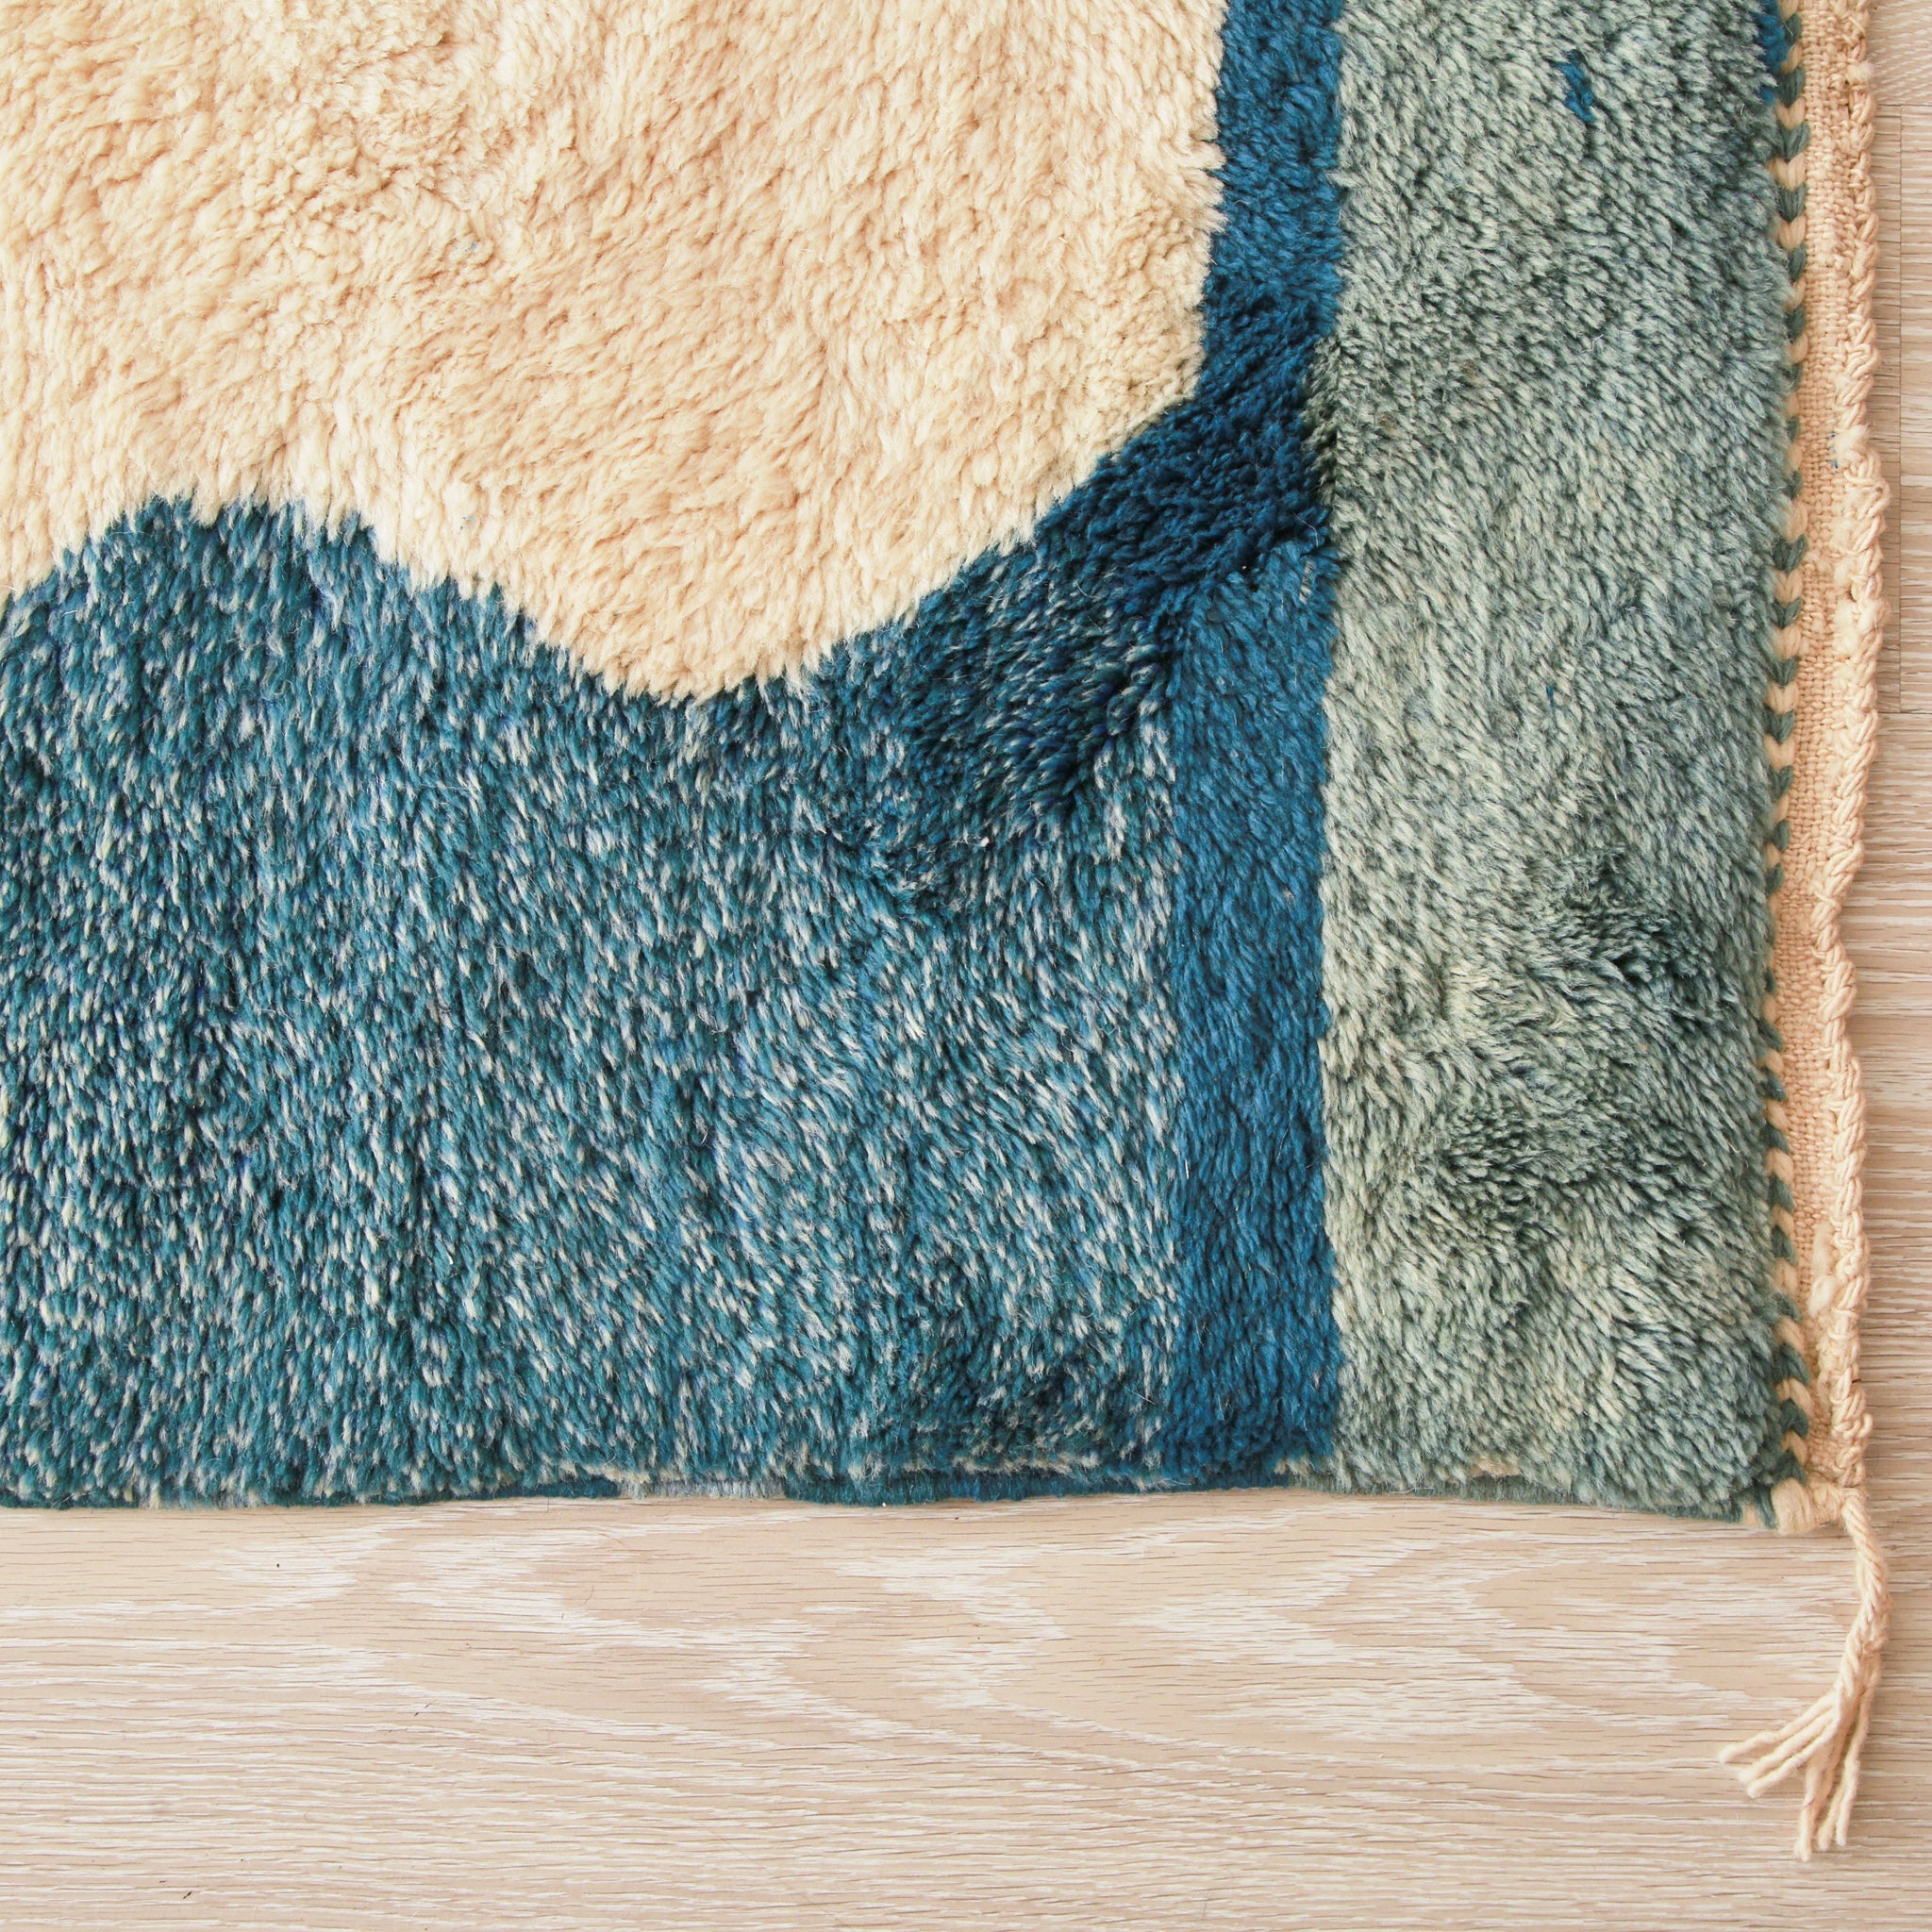 Angolo di un tappeto beni mrirt per evidenziare la qualità della lana utilizzata e le sfumature del bordo in varie tonalià di blu e azzurro